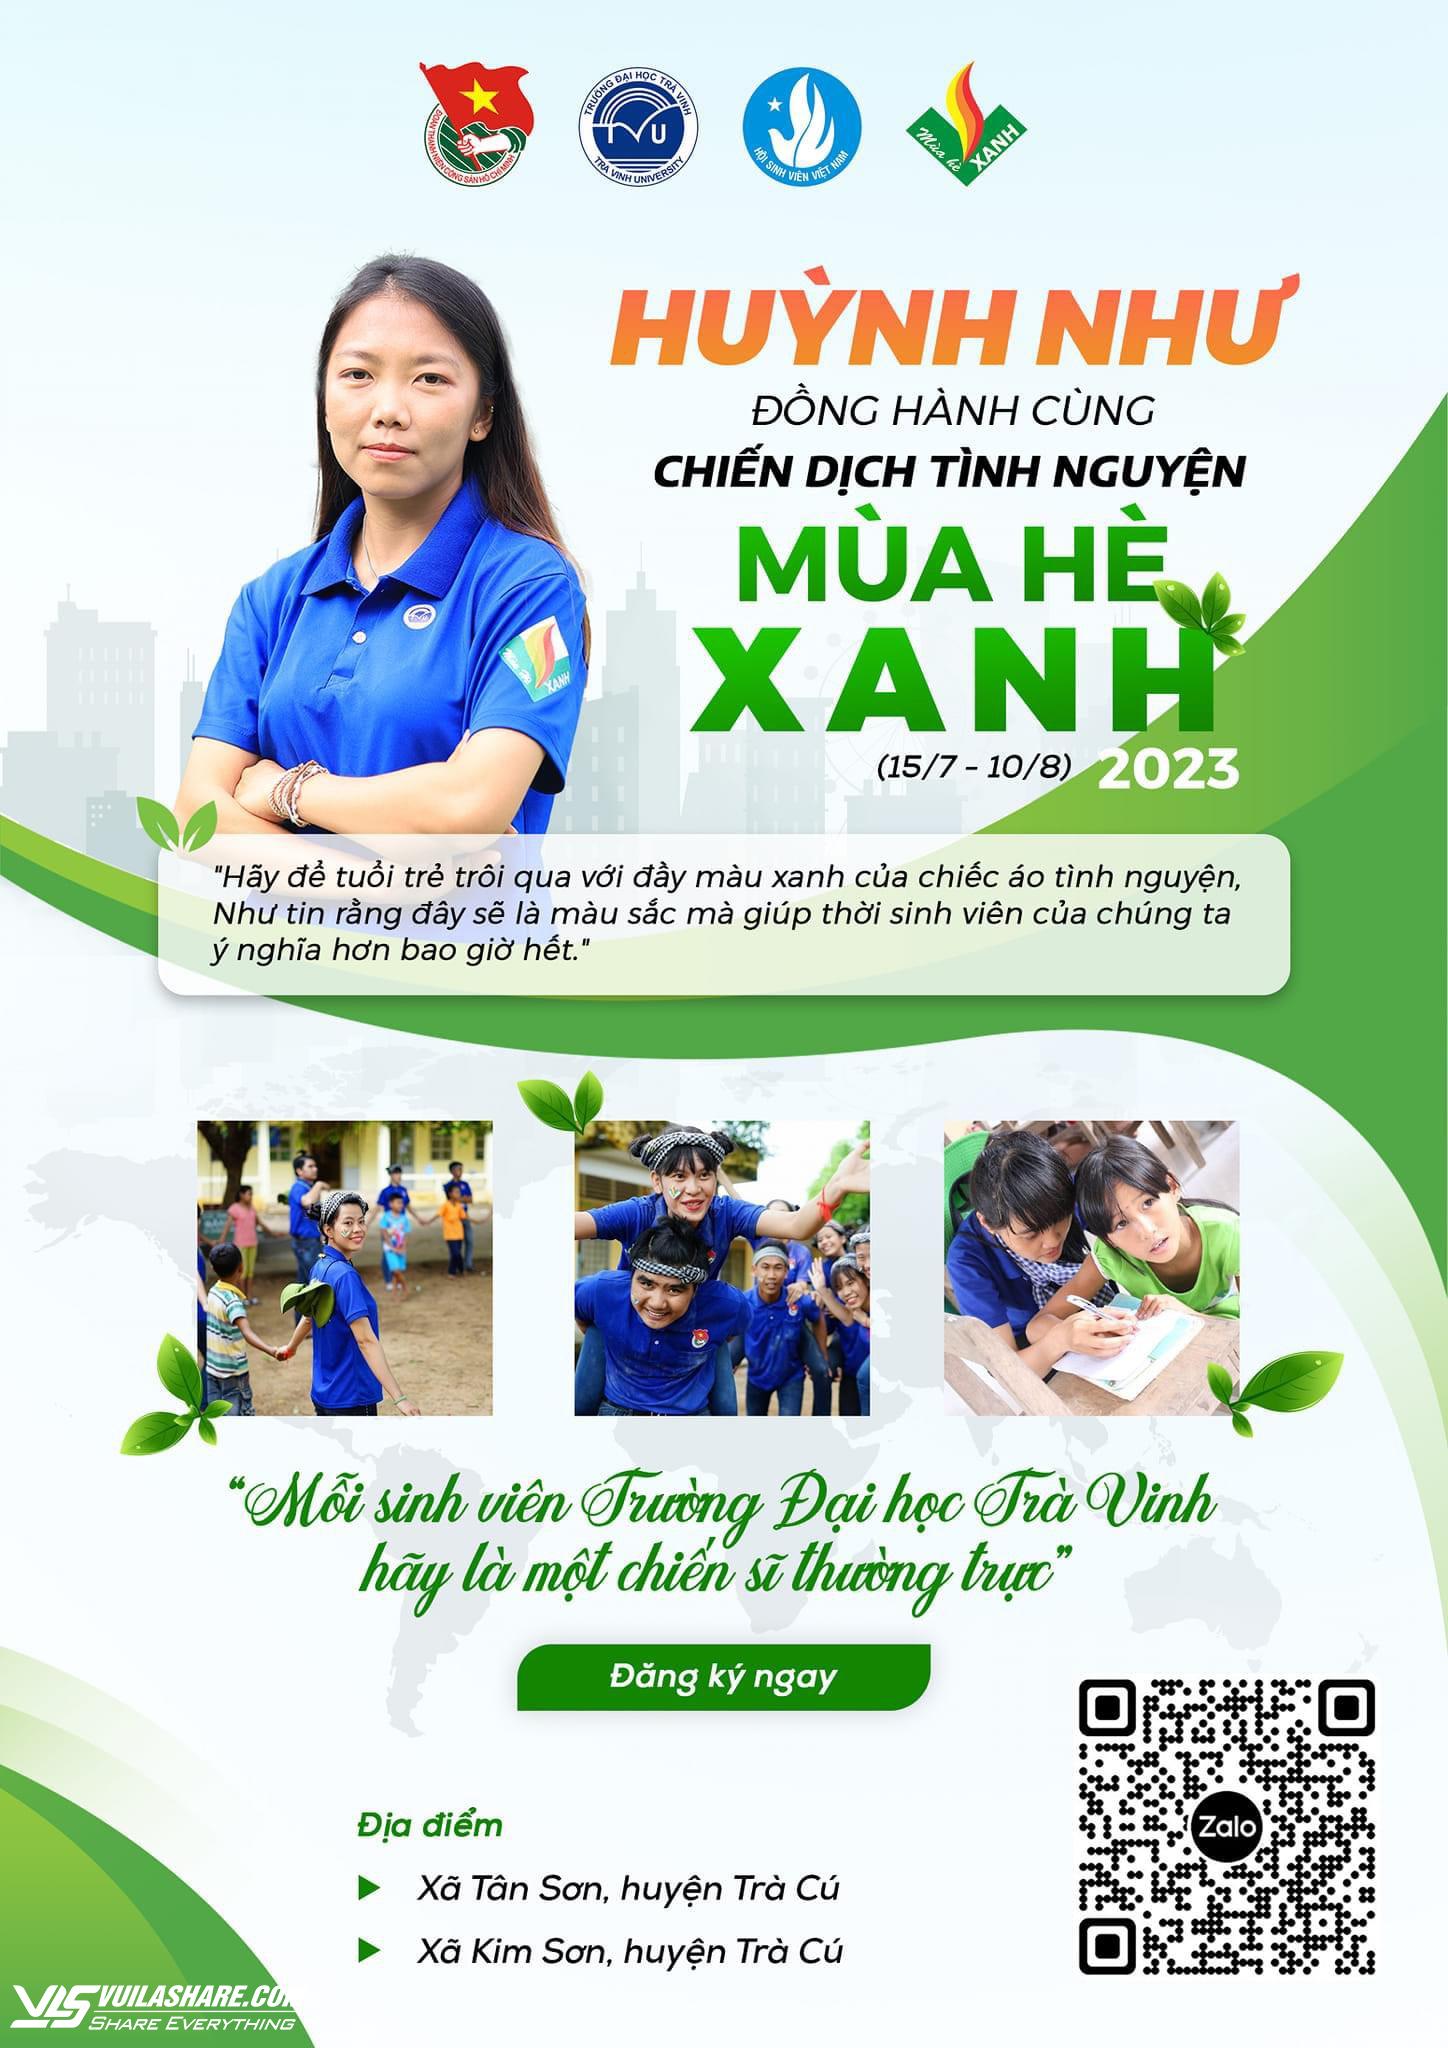 Huỳnh Như là đại sứ chương trình Mùa hè xanh của Trường ĐH Trà Vinh